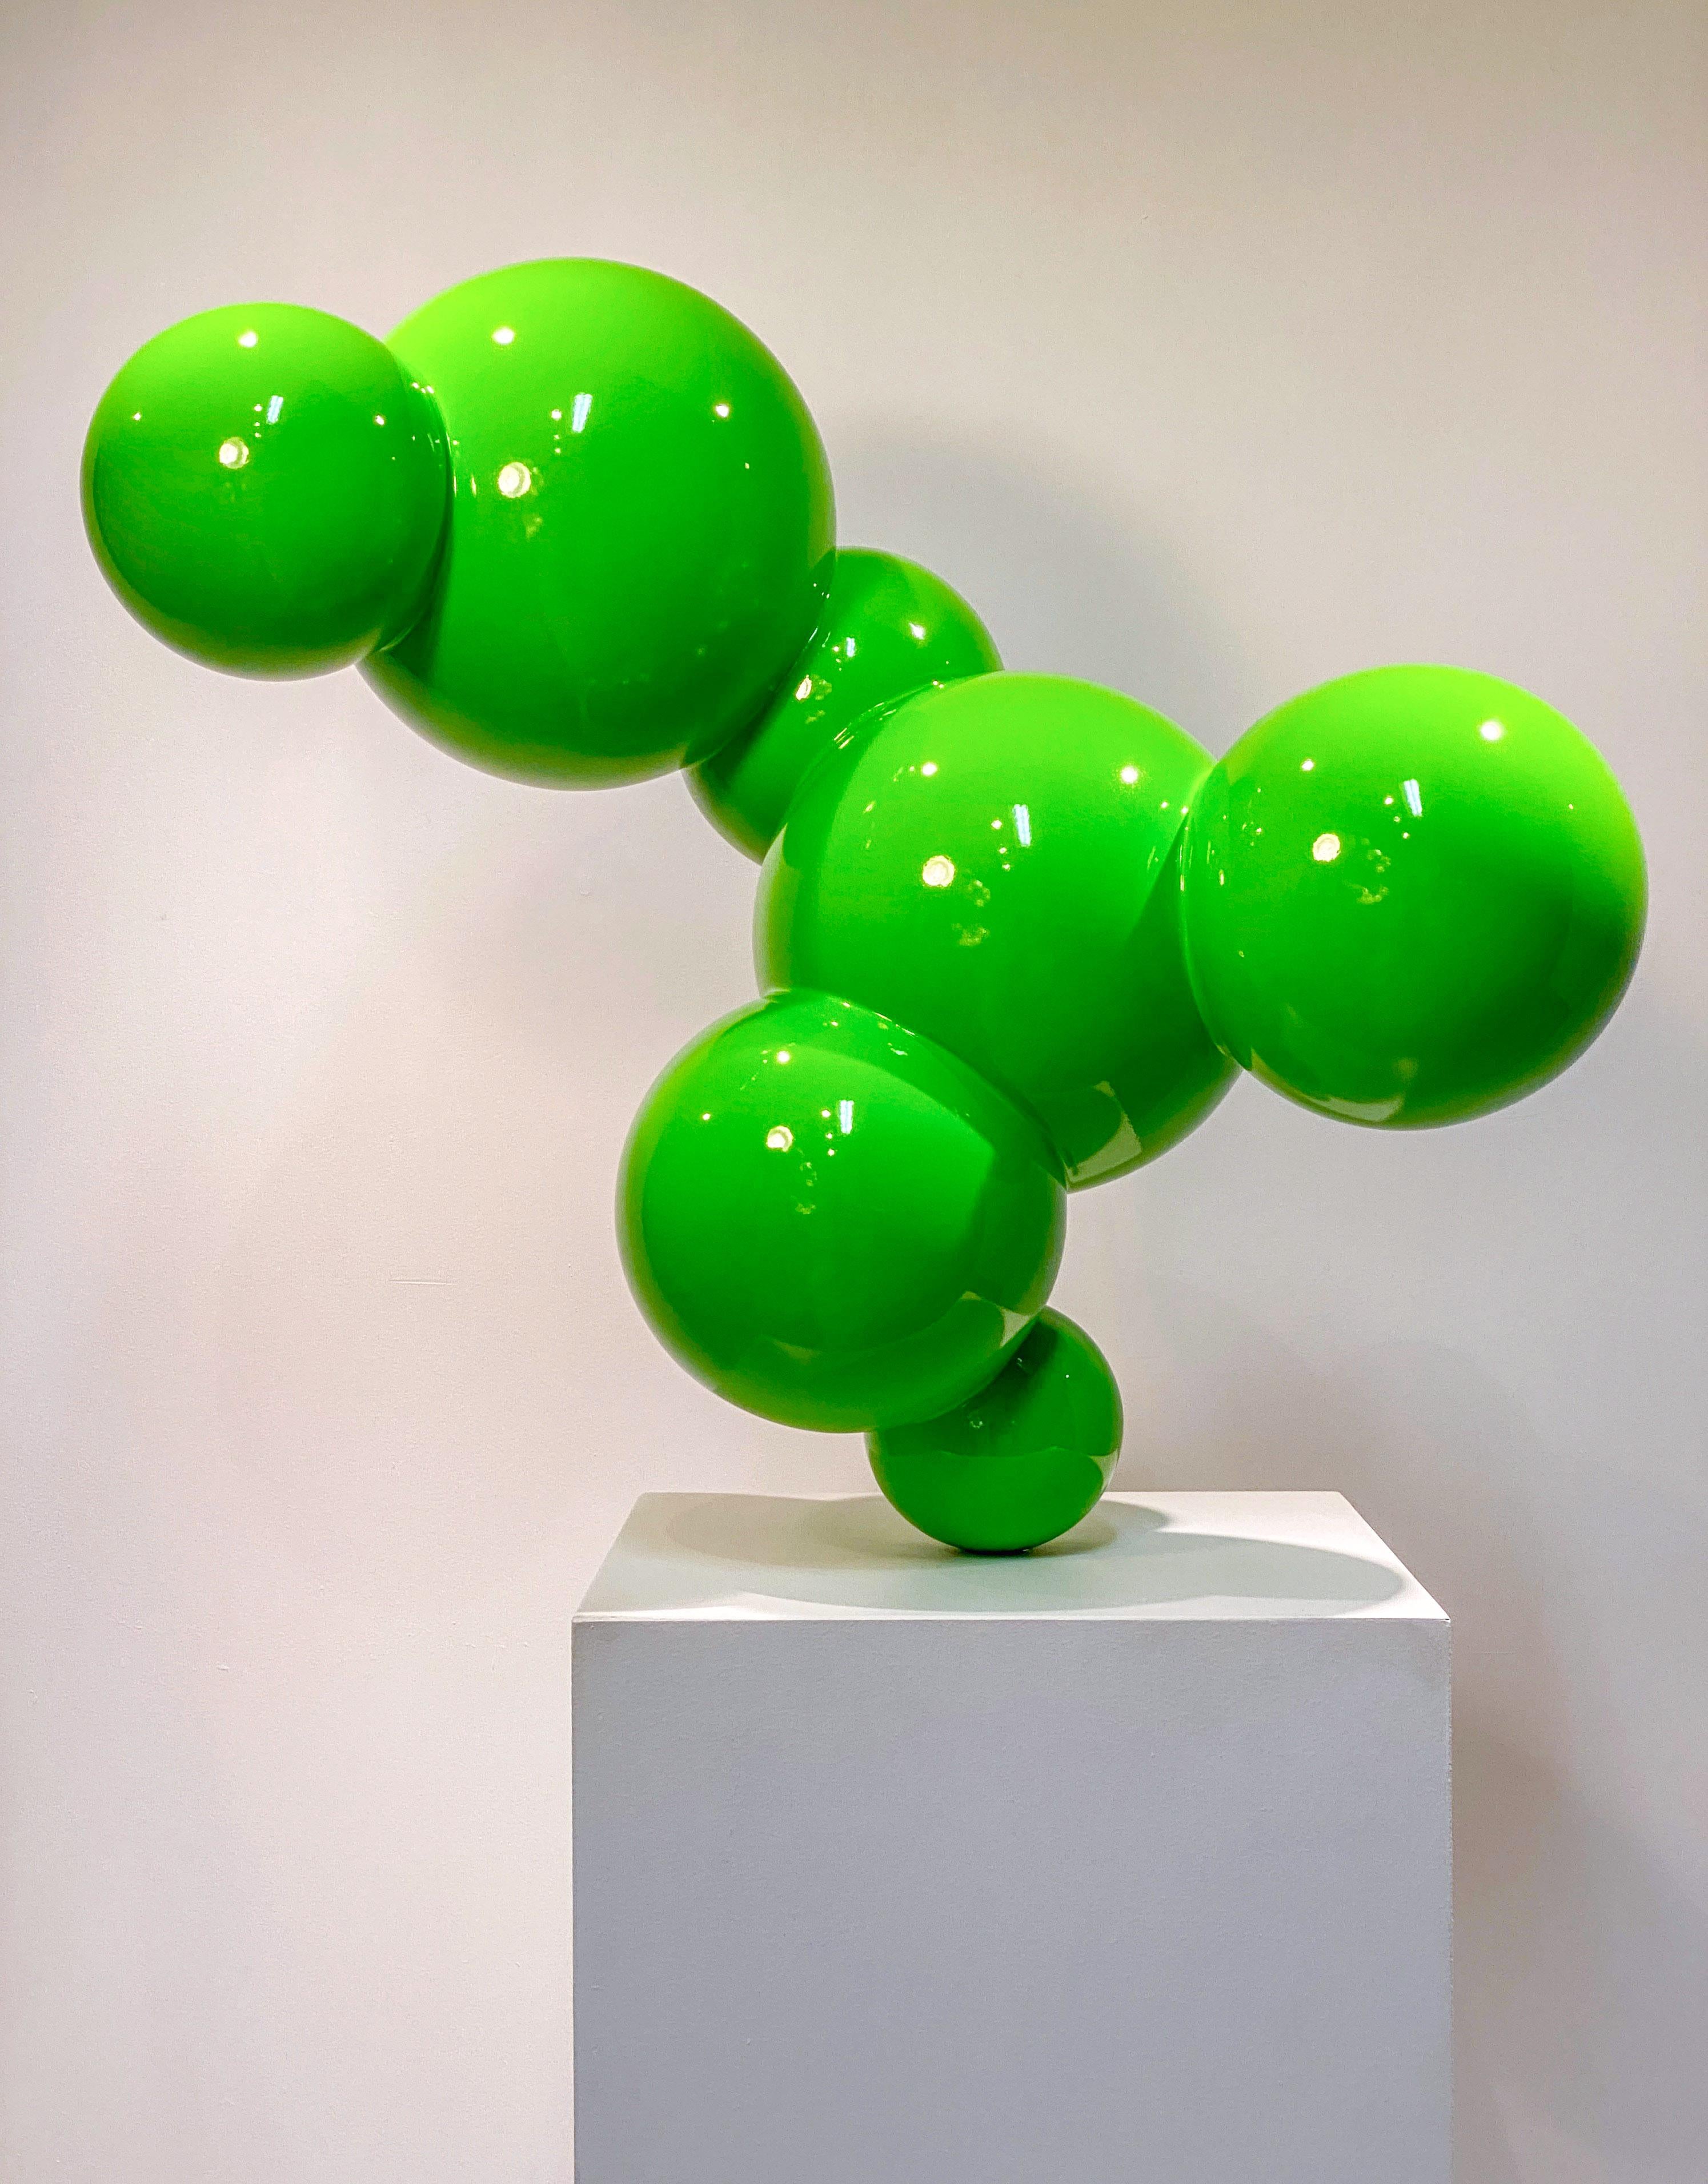 Algae 3 - vert, poli, sculpture géométrique abstraite en acier inoxydable peint - Abstrait Sculpture par Alexander Caldwell